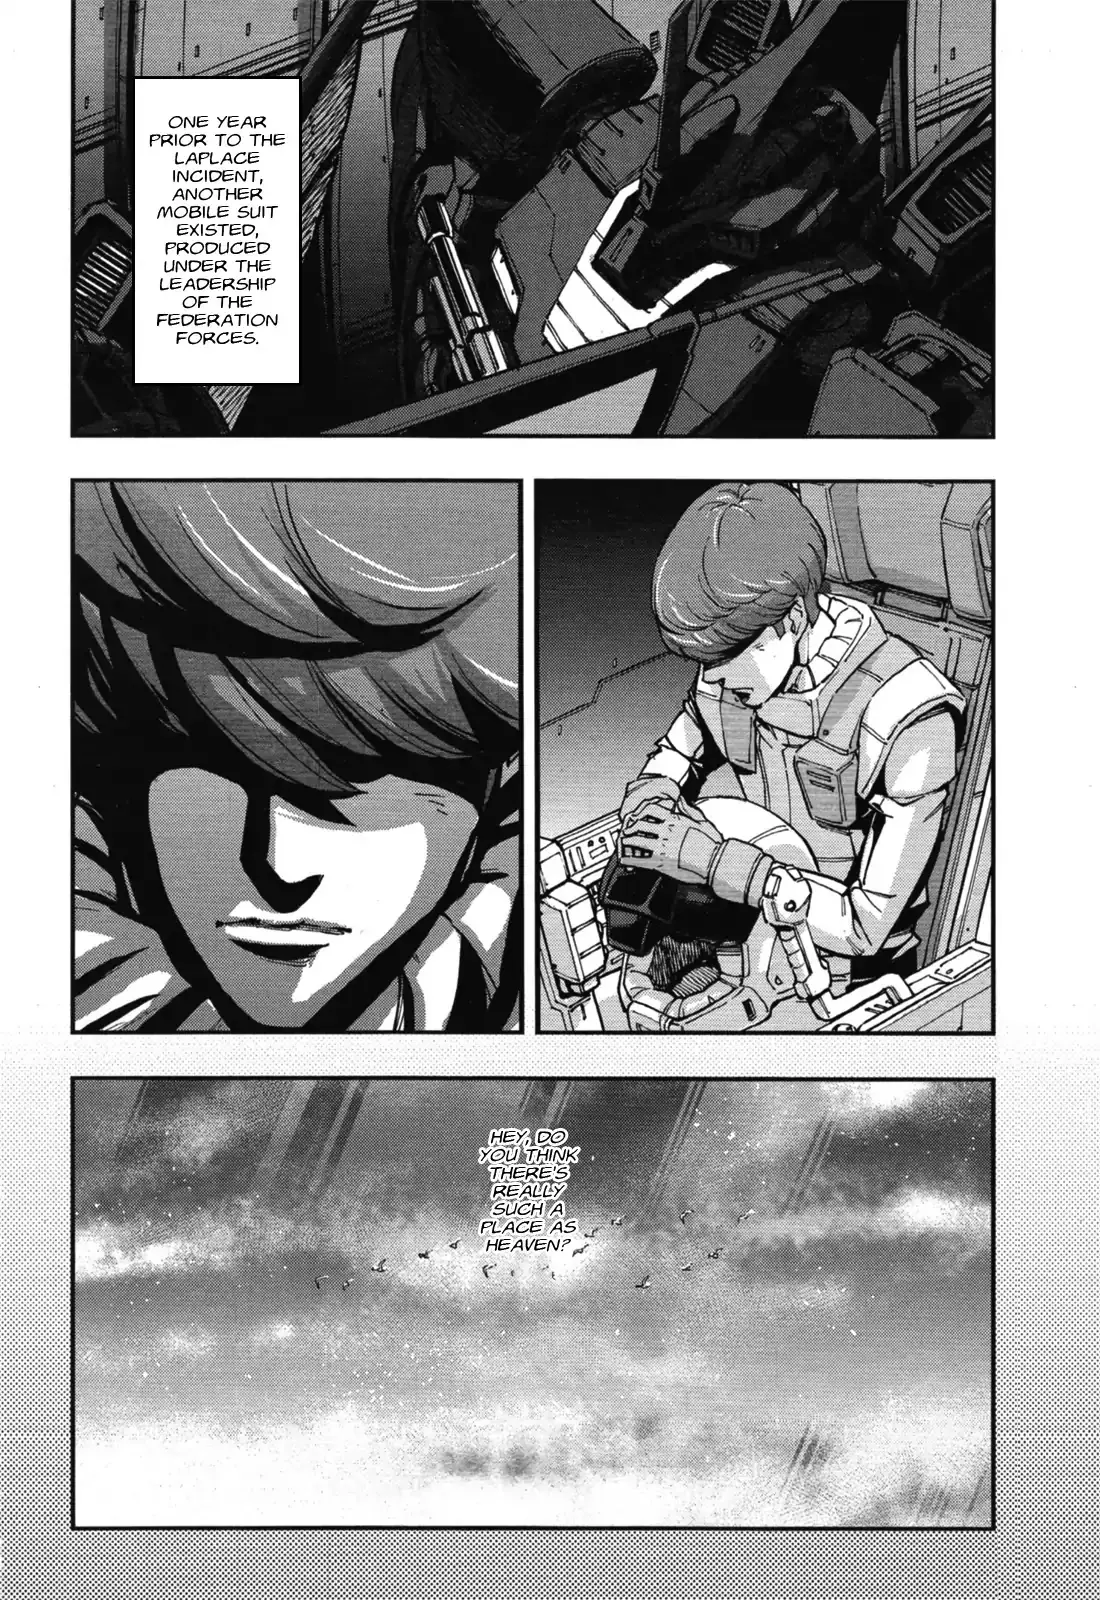 Mobile Suit Gundam Narrative - 1 page 12